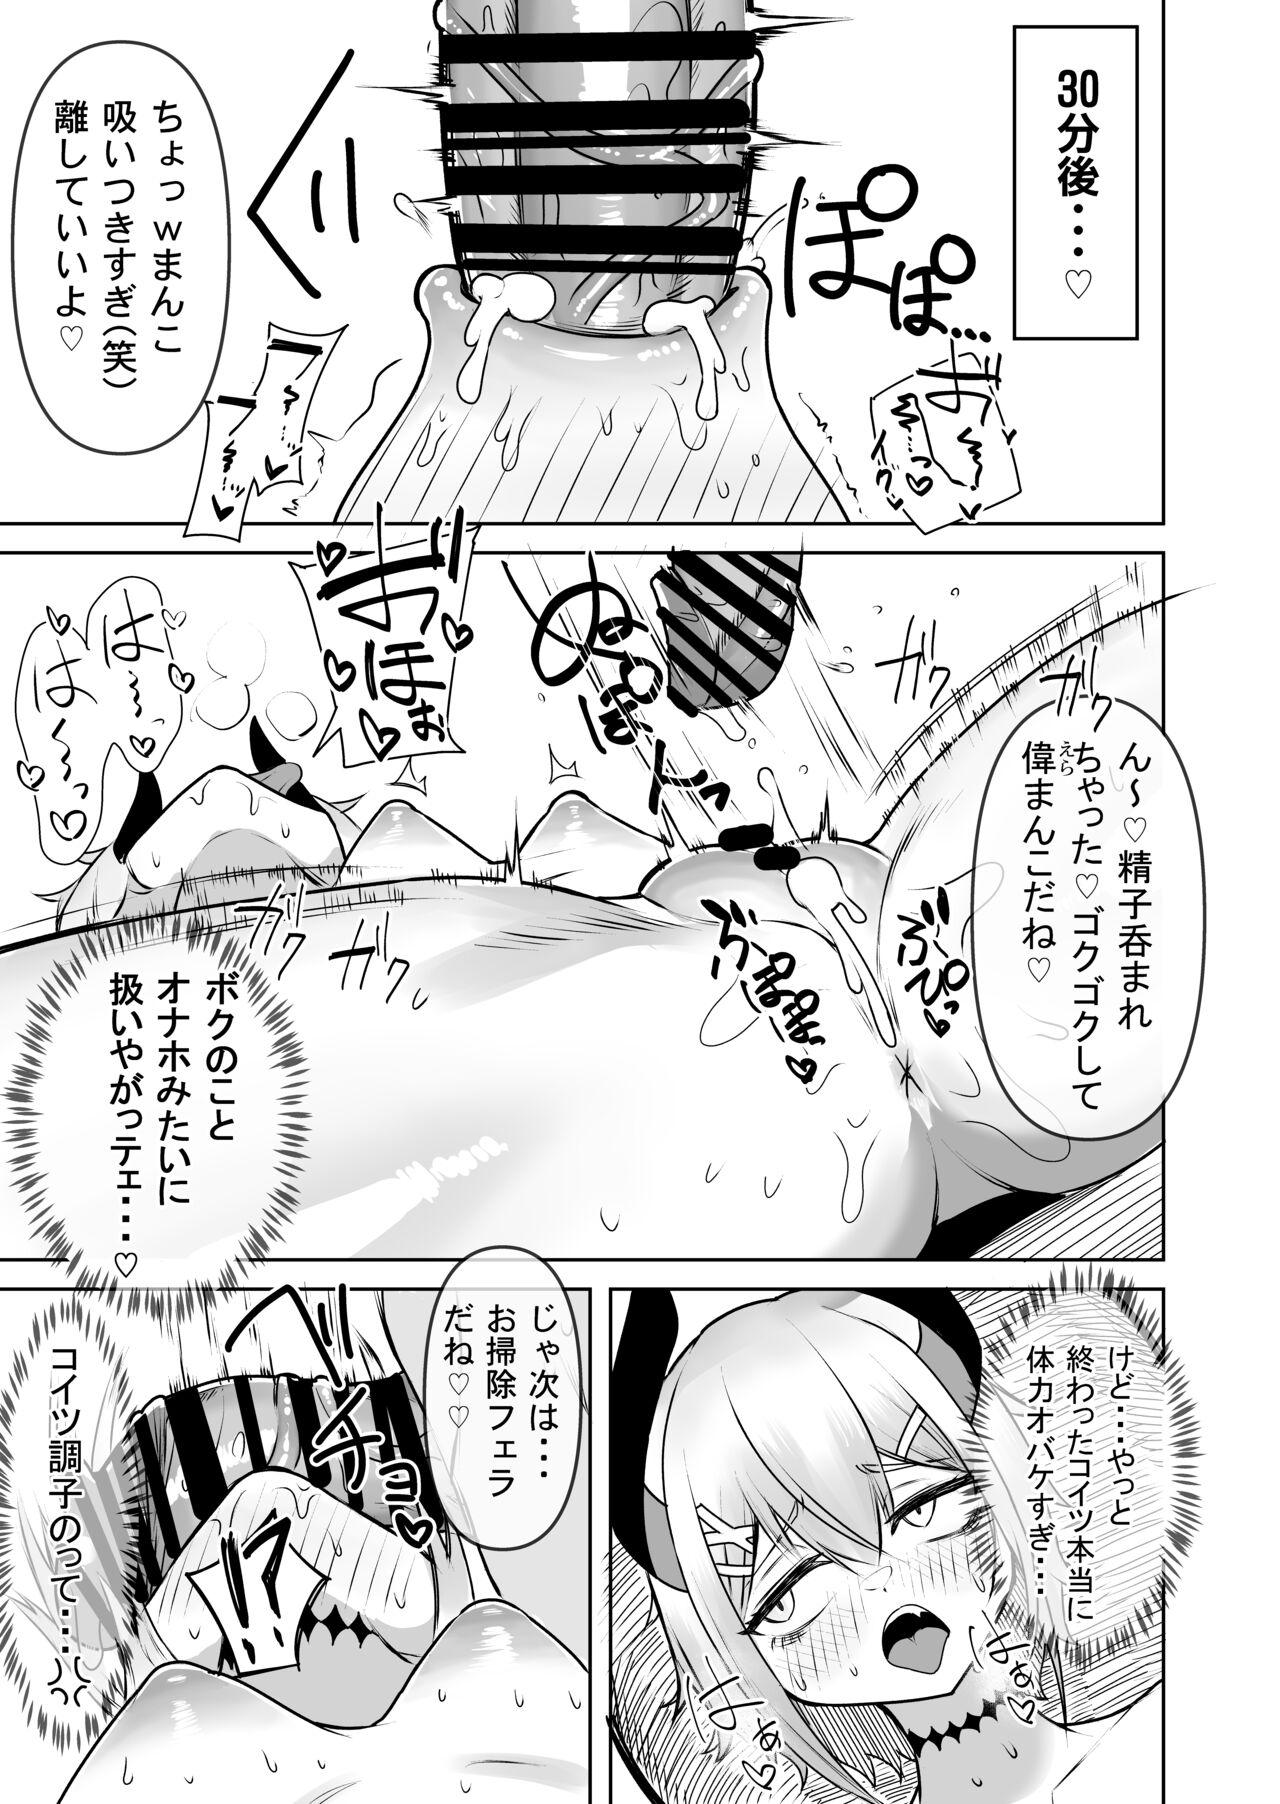 1080p Levi-chan to no natsu - Nijisanji Money Talks - Page 7